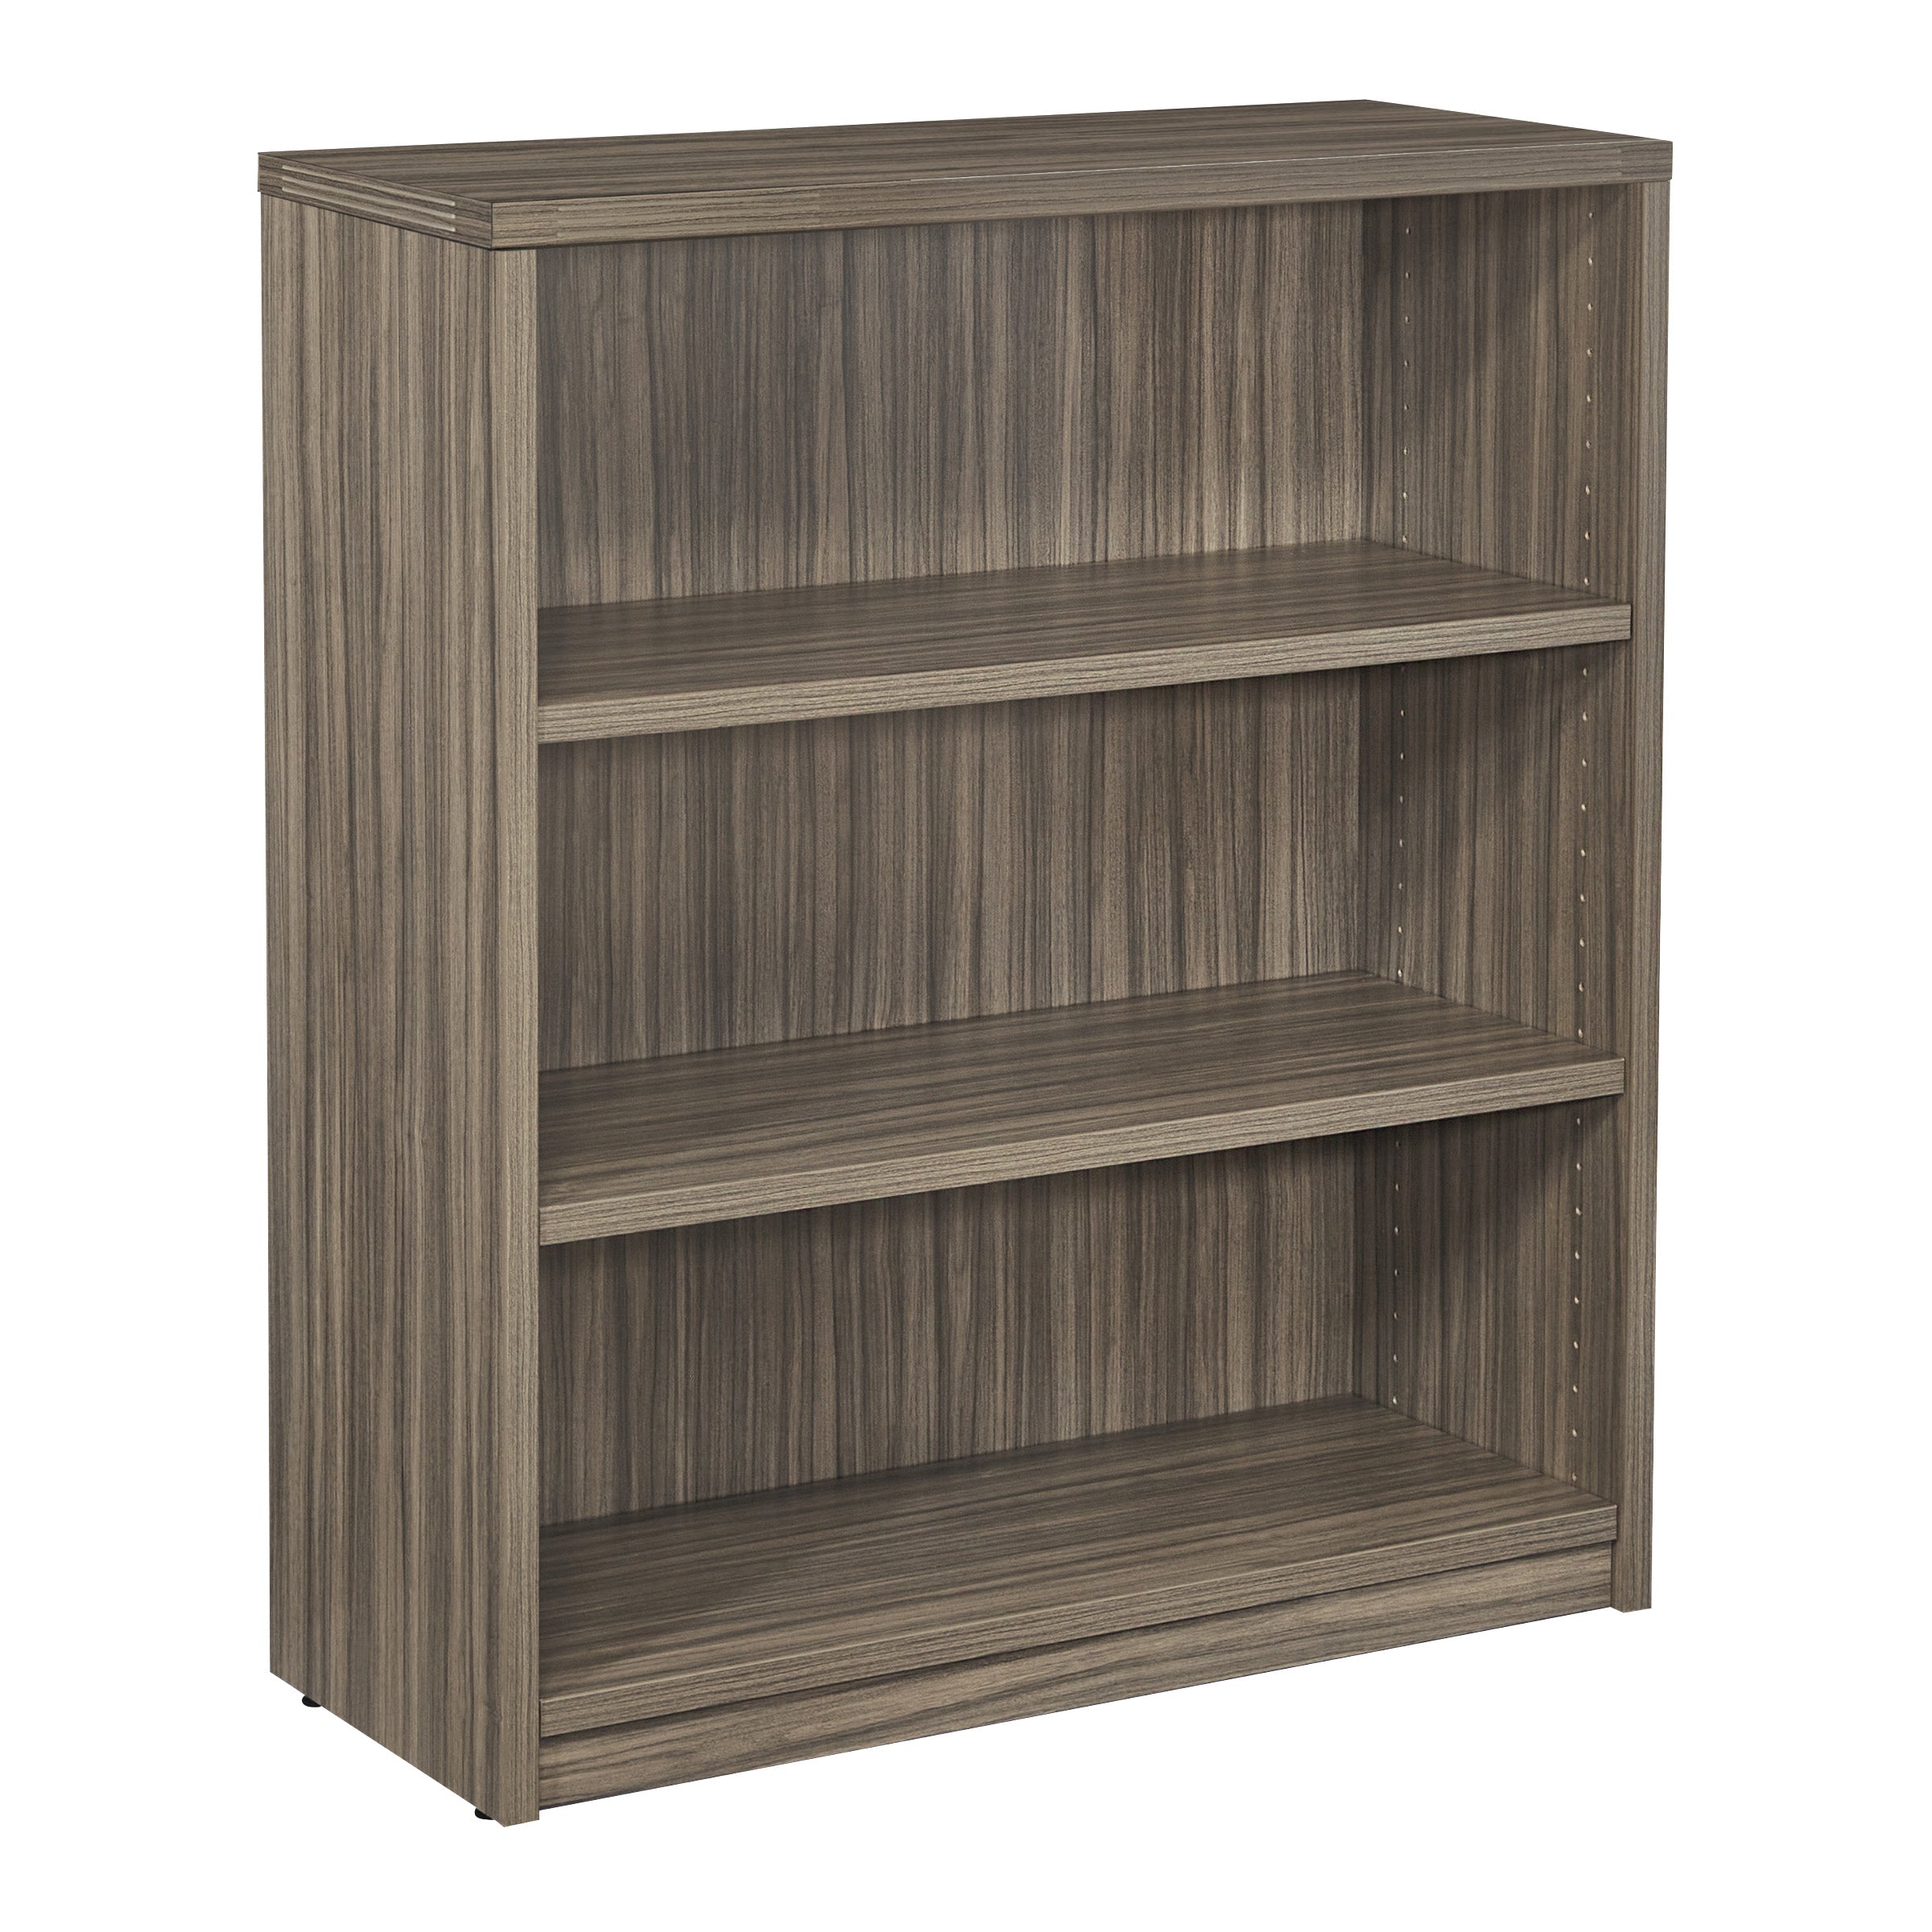 NAP55 - Napa Three Shelf Bookcase by OSP